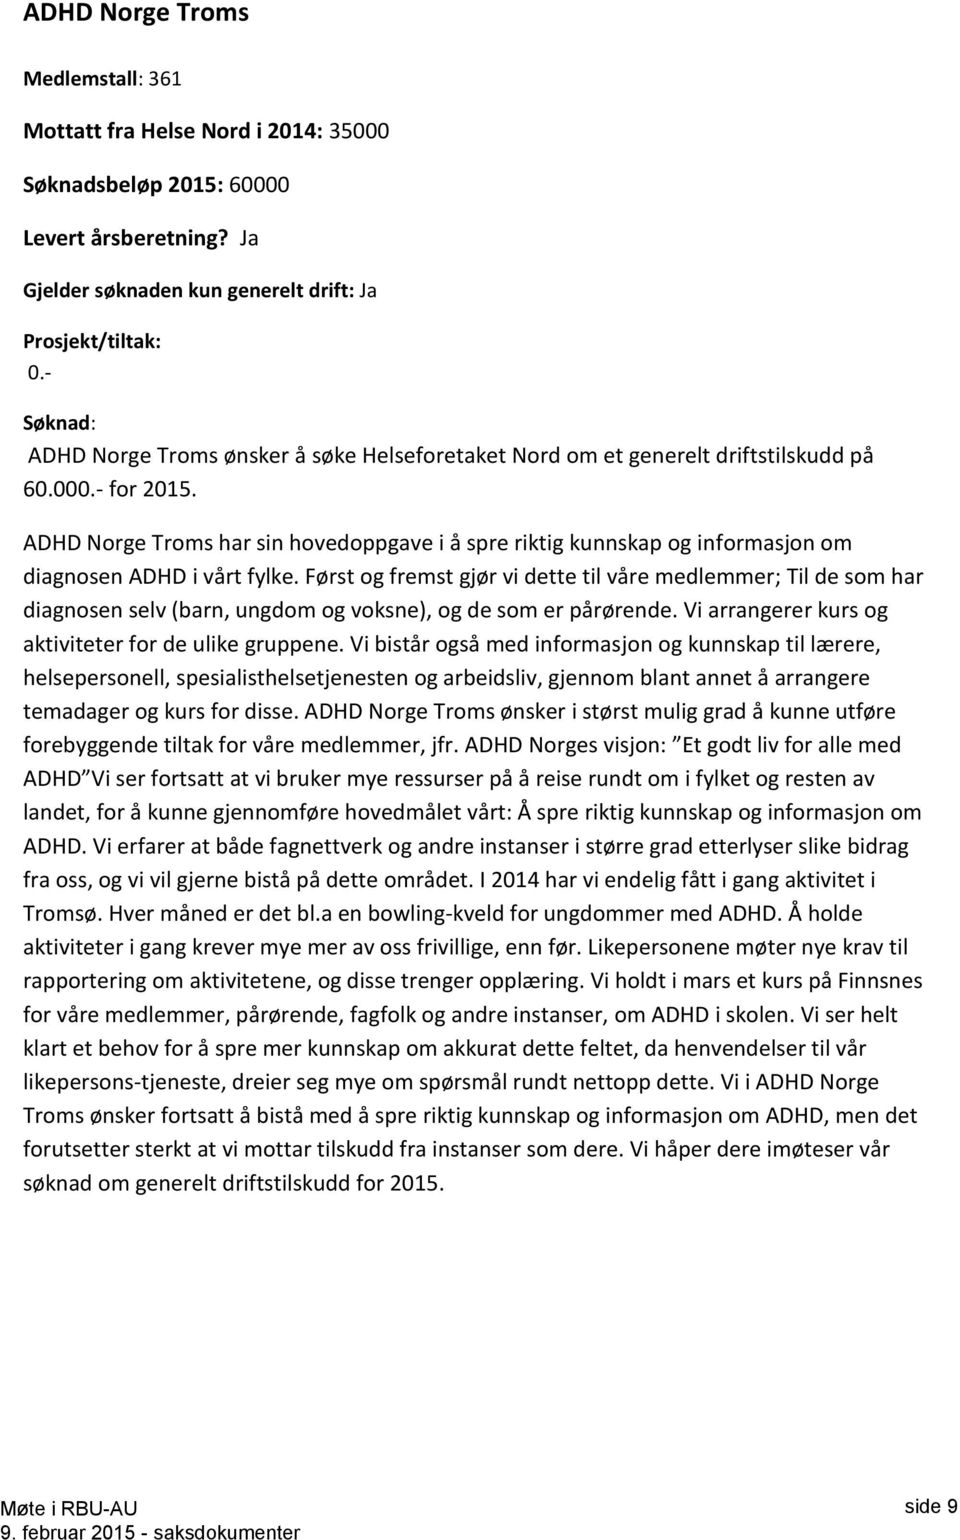 ADHD Norge Troms har sin hovedoppgave i å spre riktig kunnskap og informasjon om diagnosen ADHD i vårt fylke.